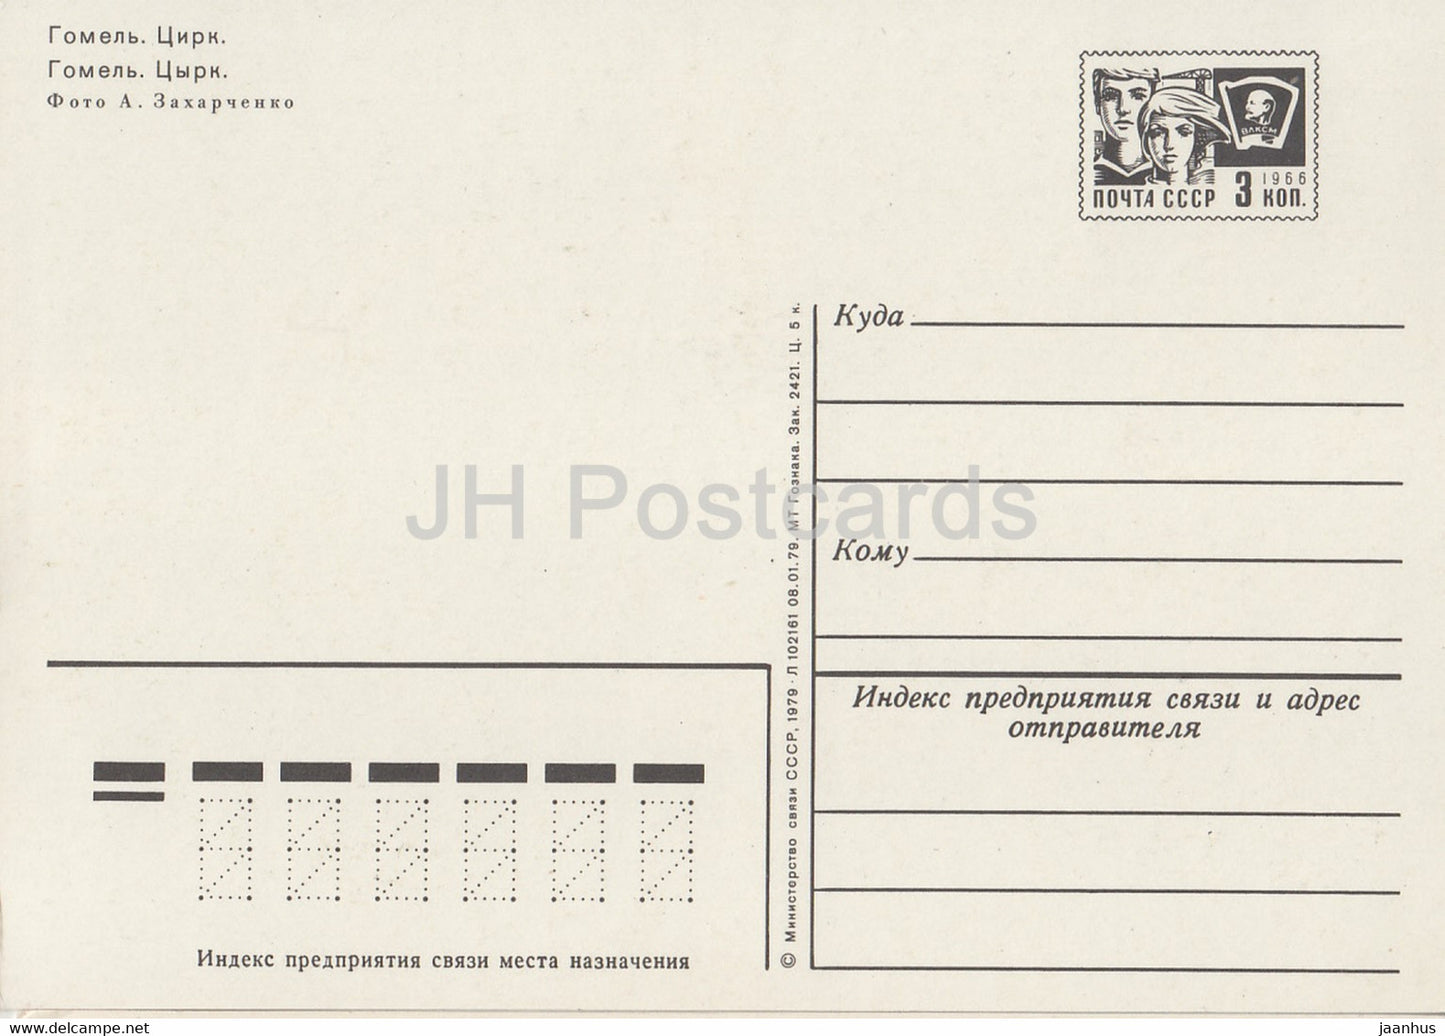 Gomel - cirque - entier postal - 1979 - Biélorussie URSS - inutilisé